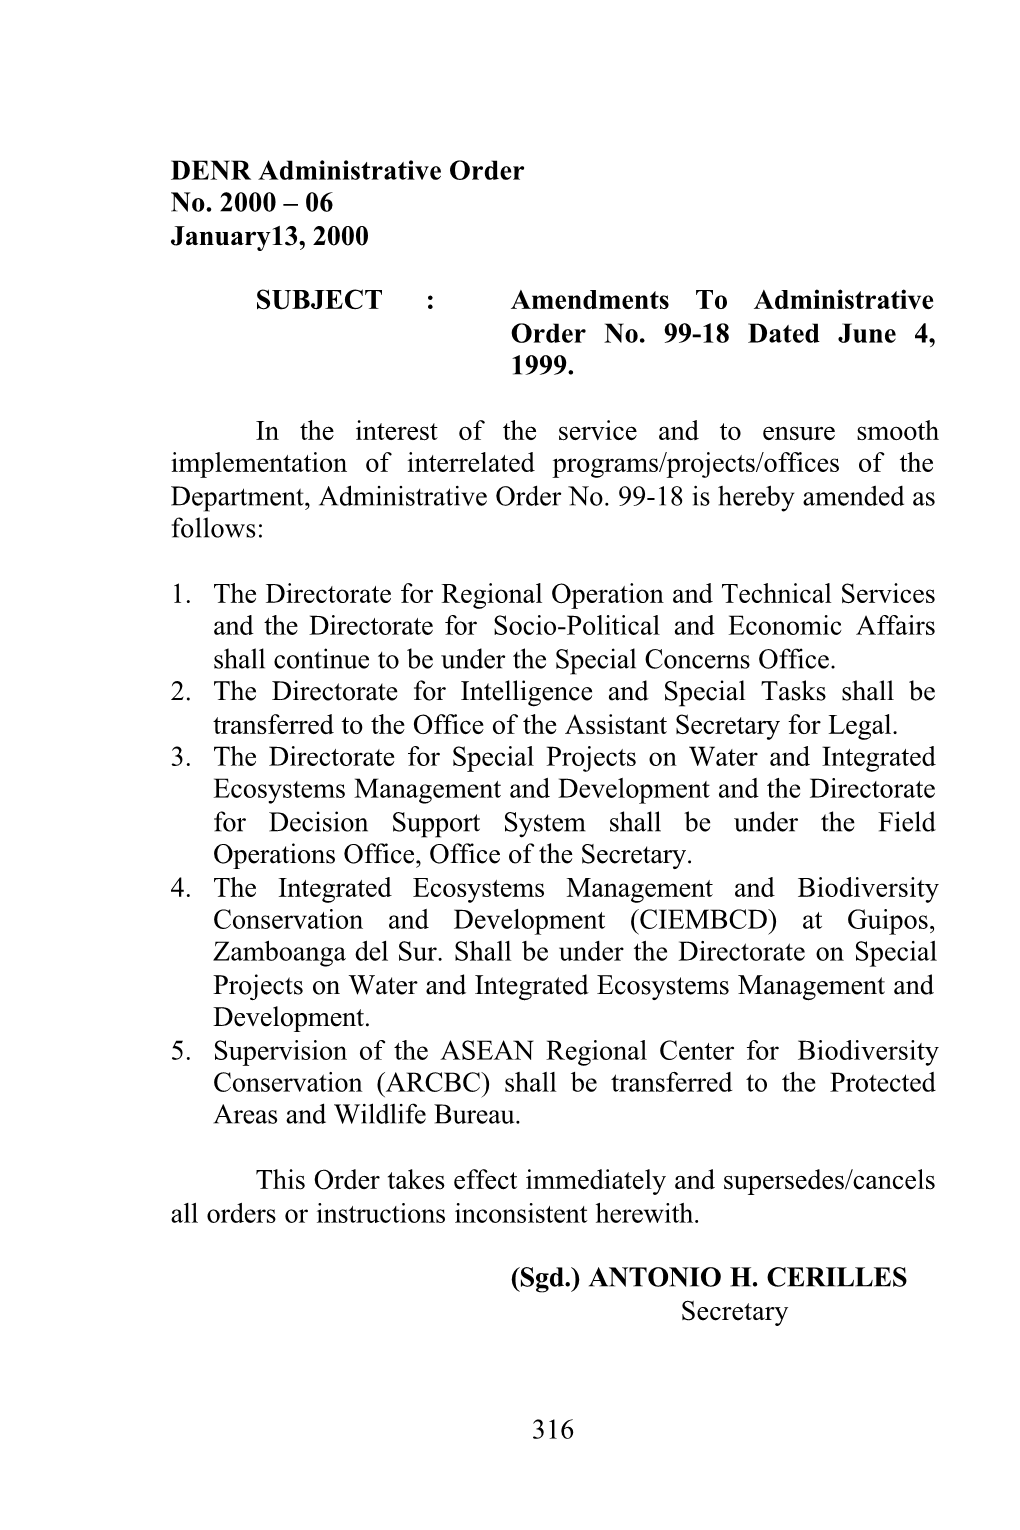 316 DENR Administrative Order No. 2000 – 10 February 01, 2000